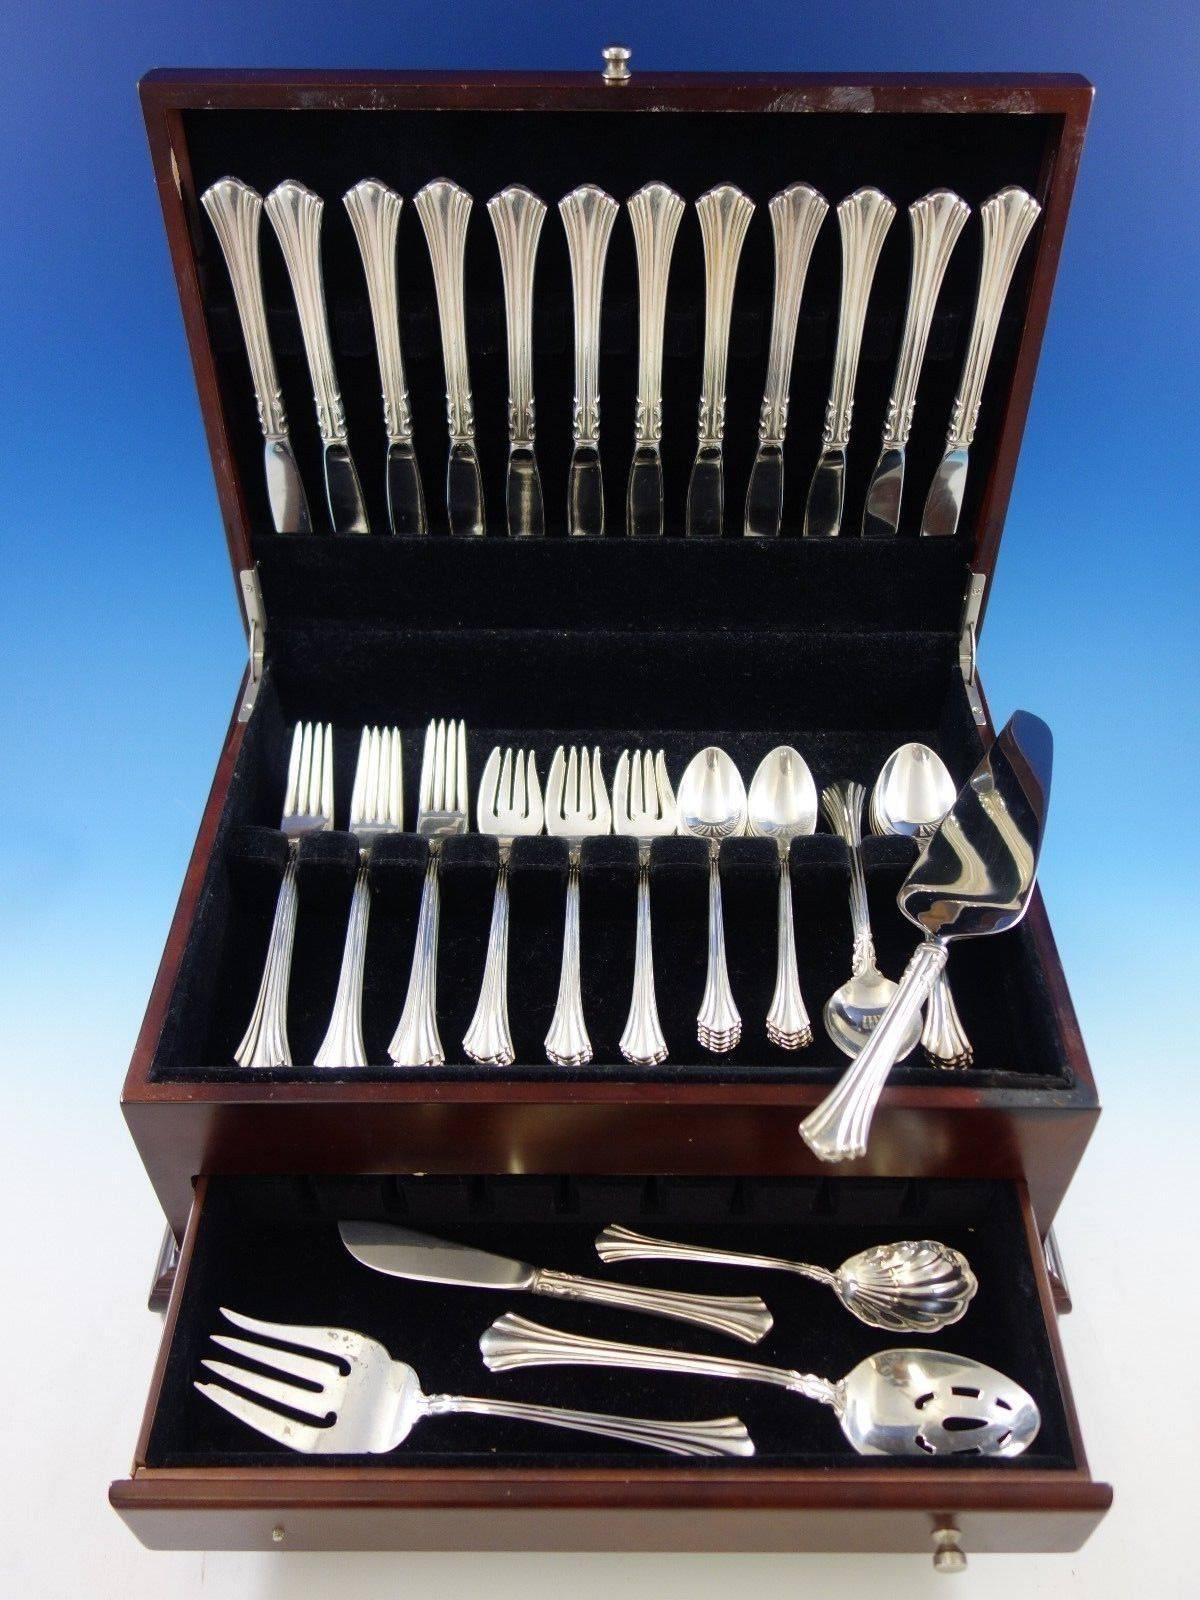 Achtzehnten Jahrhundert von Reed & Barton Sterling Silber Besteck - 65 Stück. Dieses Set enthält: 

12 Messer, 9